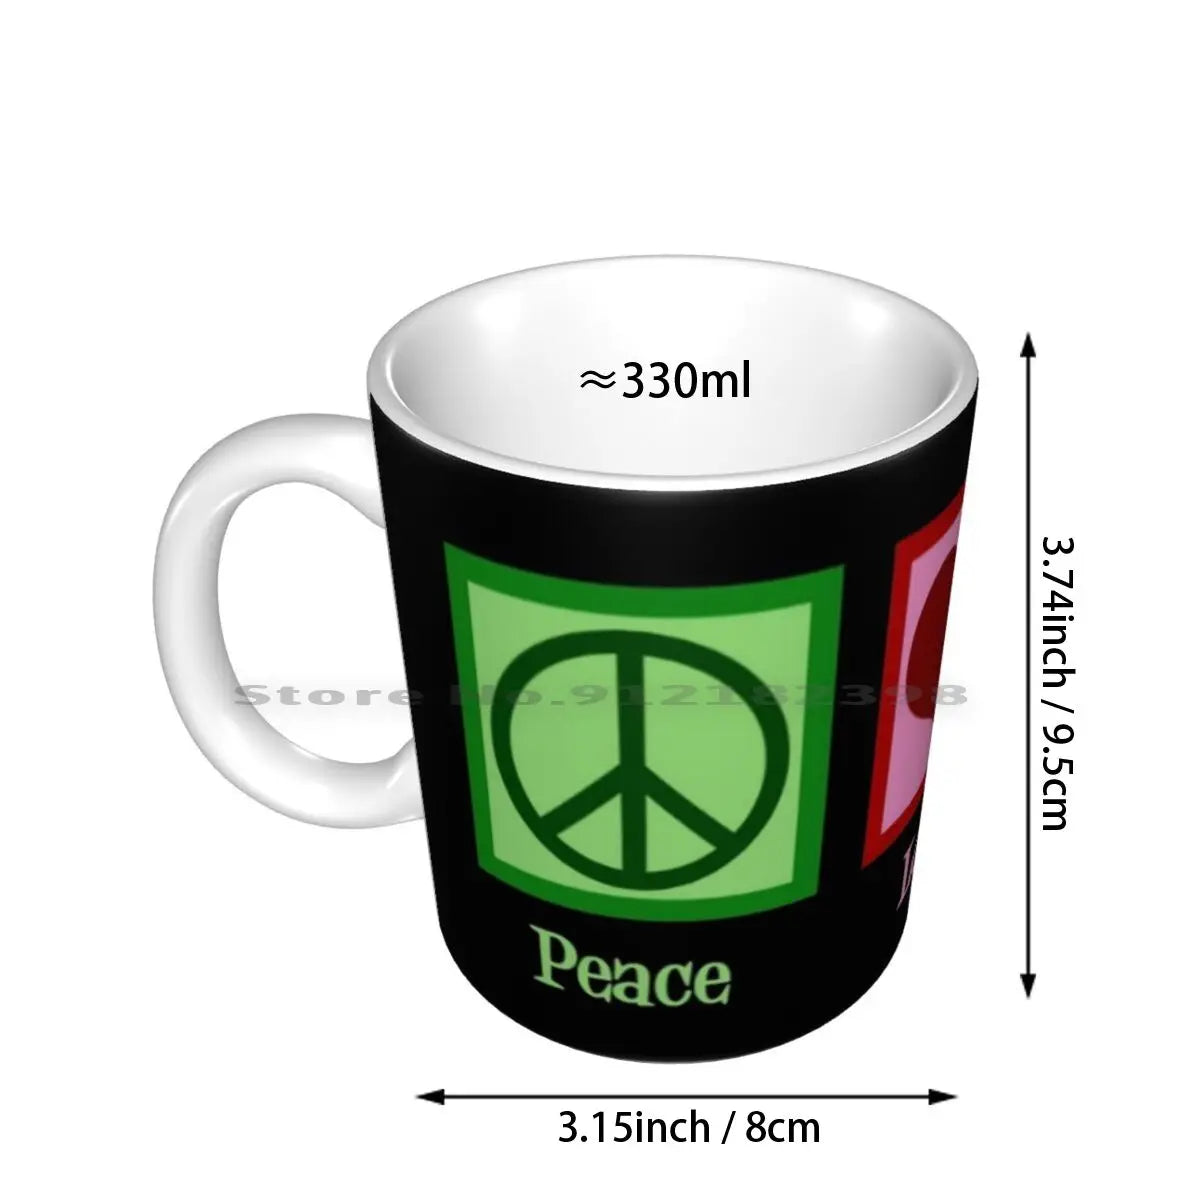 Mug - Peace Love Forensics Fingerprint Mug